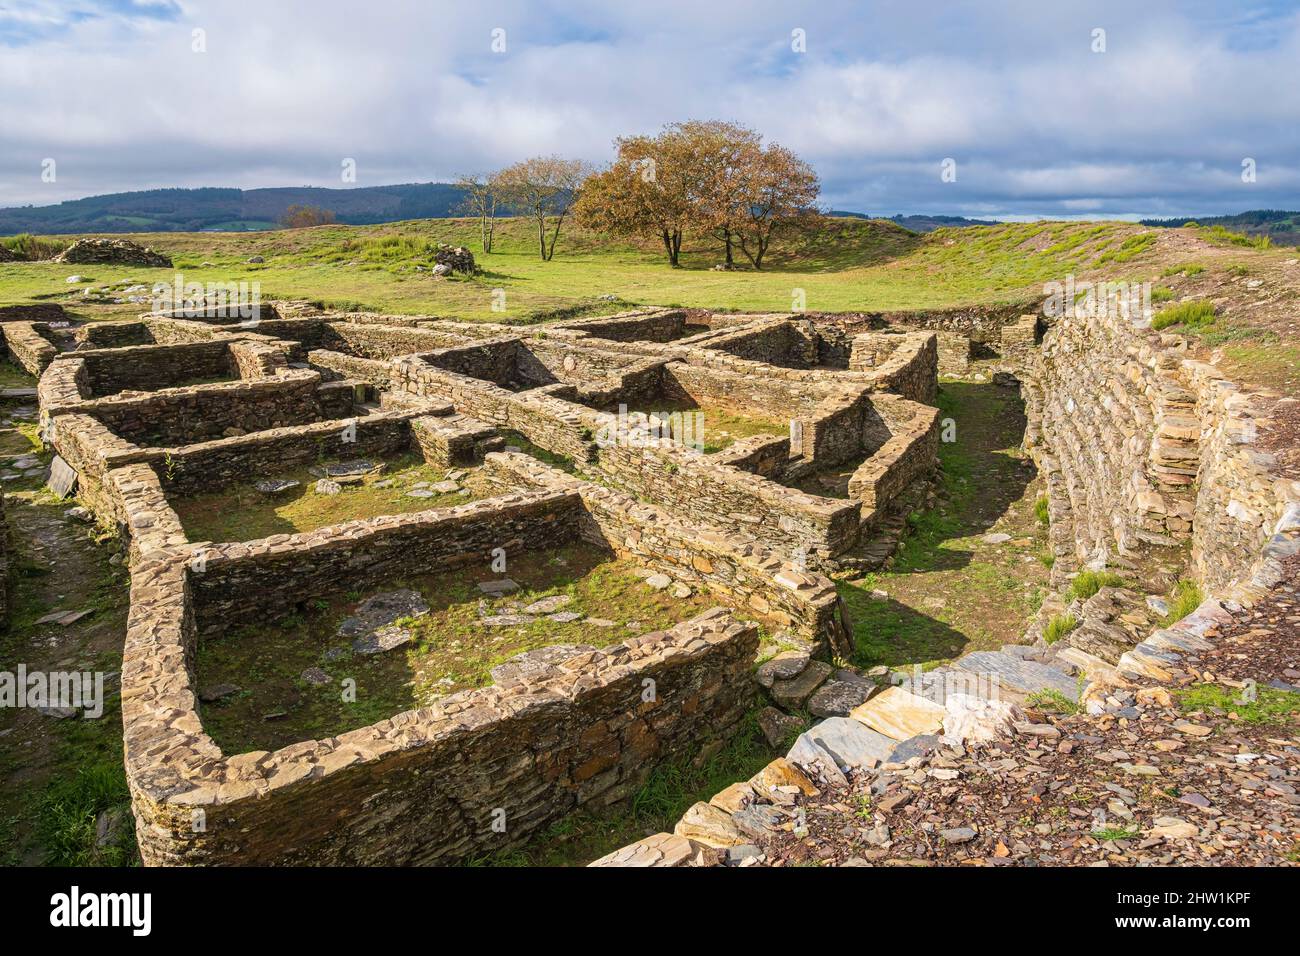 Spanien, Galizien, Umgebung von Portomarin, Camino Franc, spanische Pilgerroute nach Santiago de Compostela, die zum UNESCO-Weltkulturerbe gehört, Festung Castromaior, die während der Eisenzeit um das 5.. Jahrhundert v. Chr. erbaut wurde Stockfoto